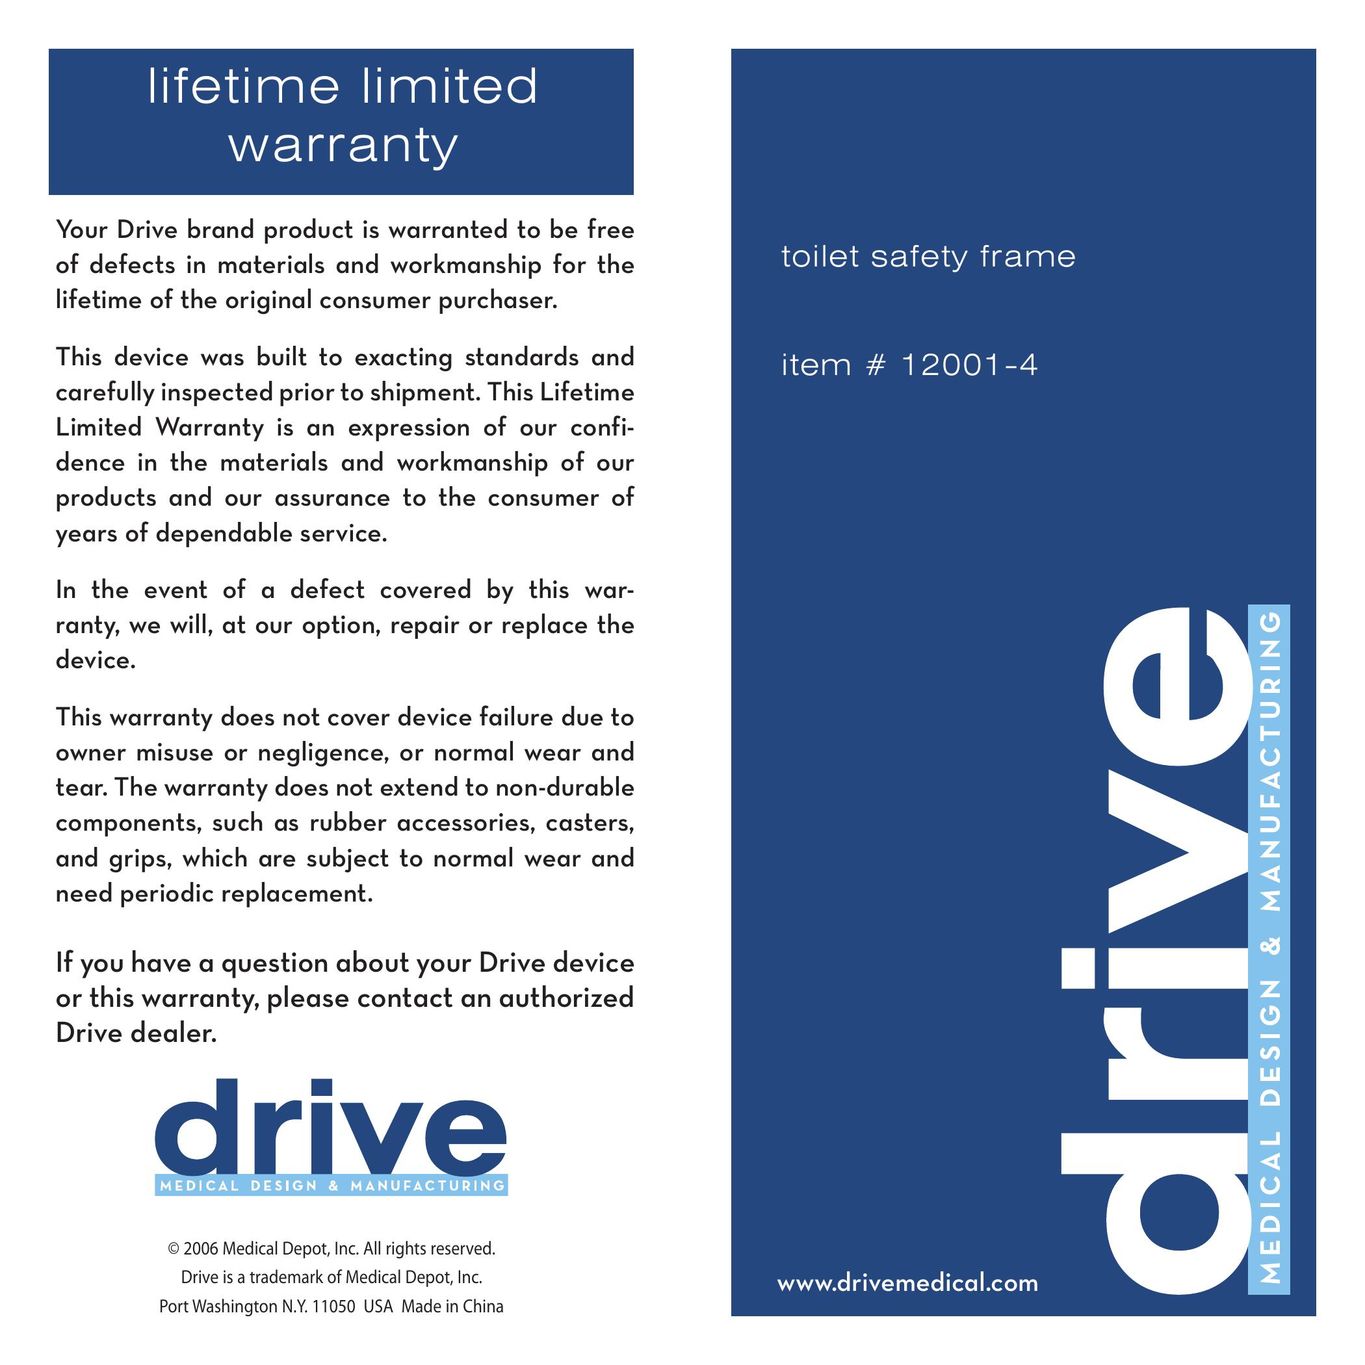 Drive Medical Design 12001-4 Plumbing Product User Manual